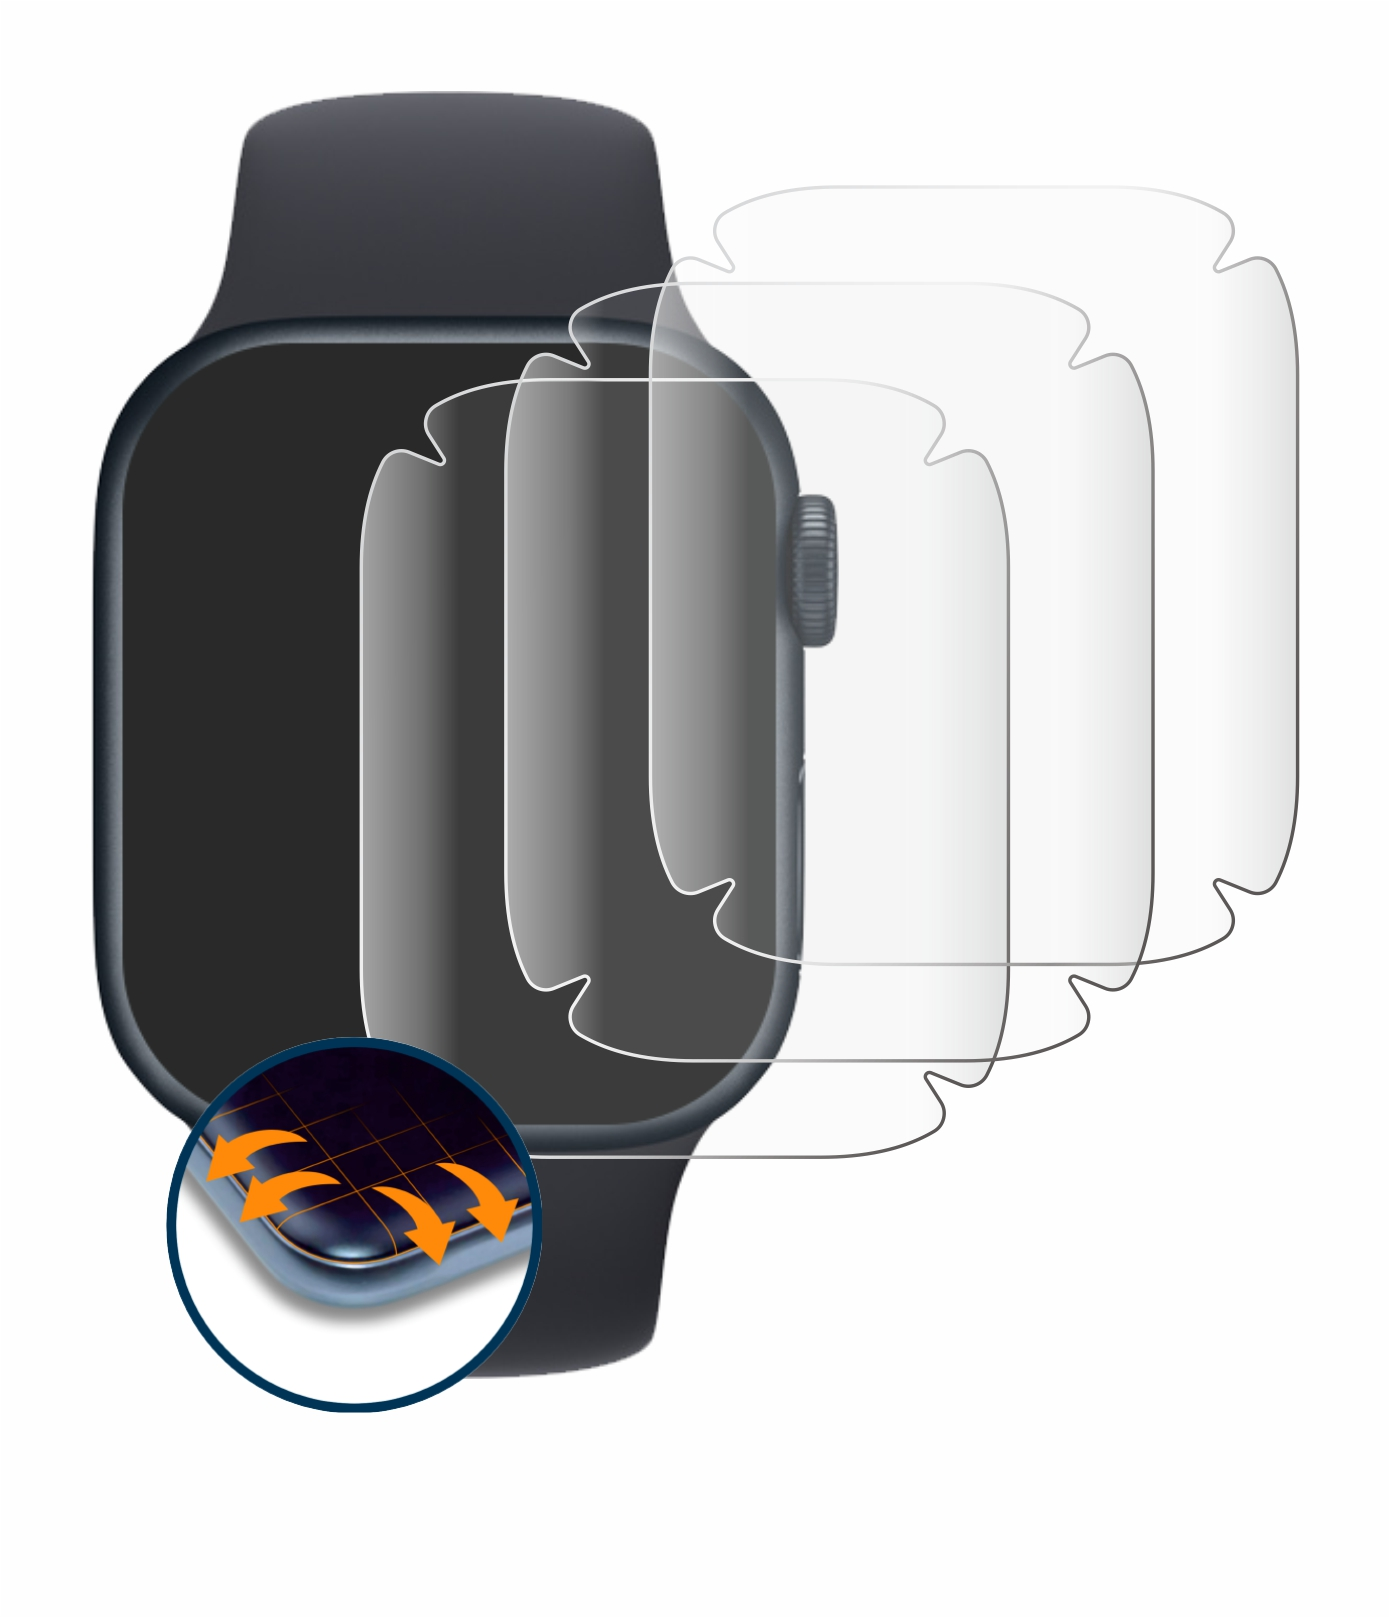 SAVVIES 4x Flex Full-Cover 3D Curved Schutzfolie(für Watch (41 8 Series Apple mm))